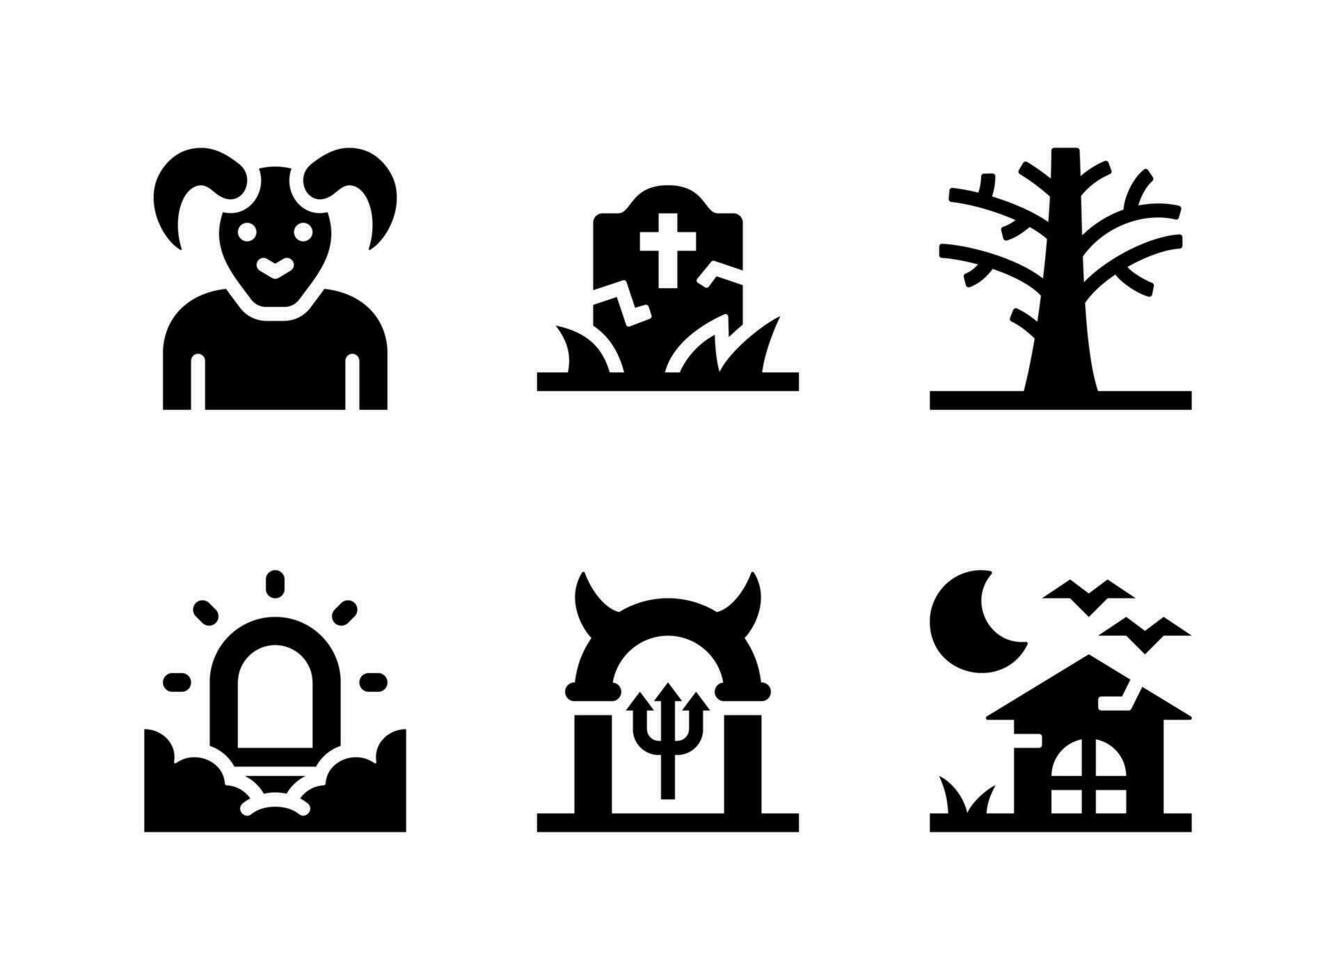 semplice set di icone solide vettoriali relative a halloween